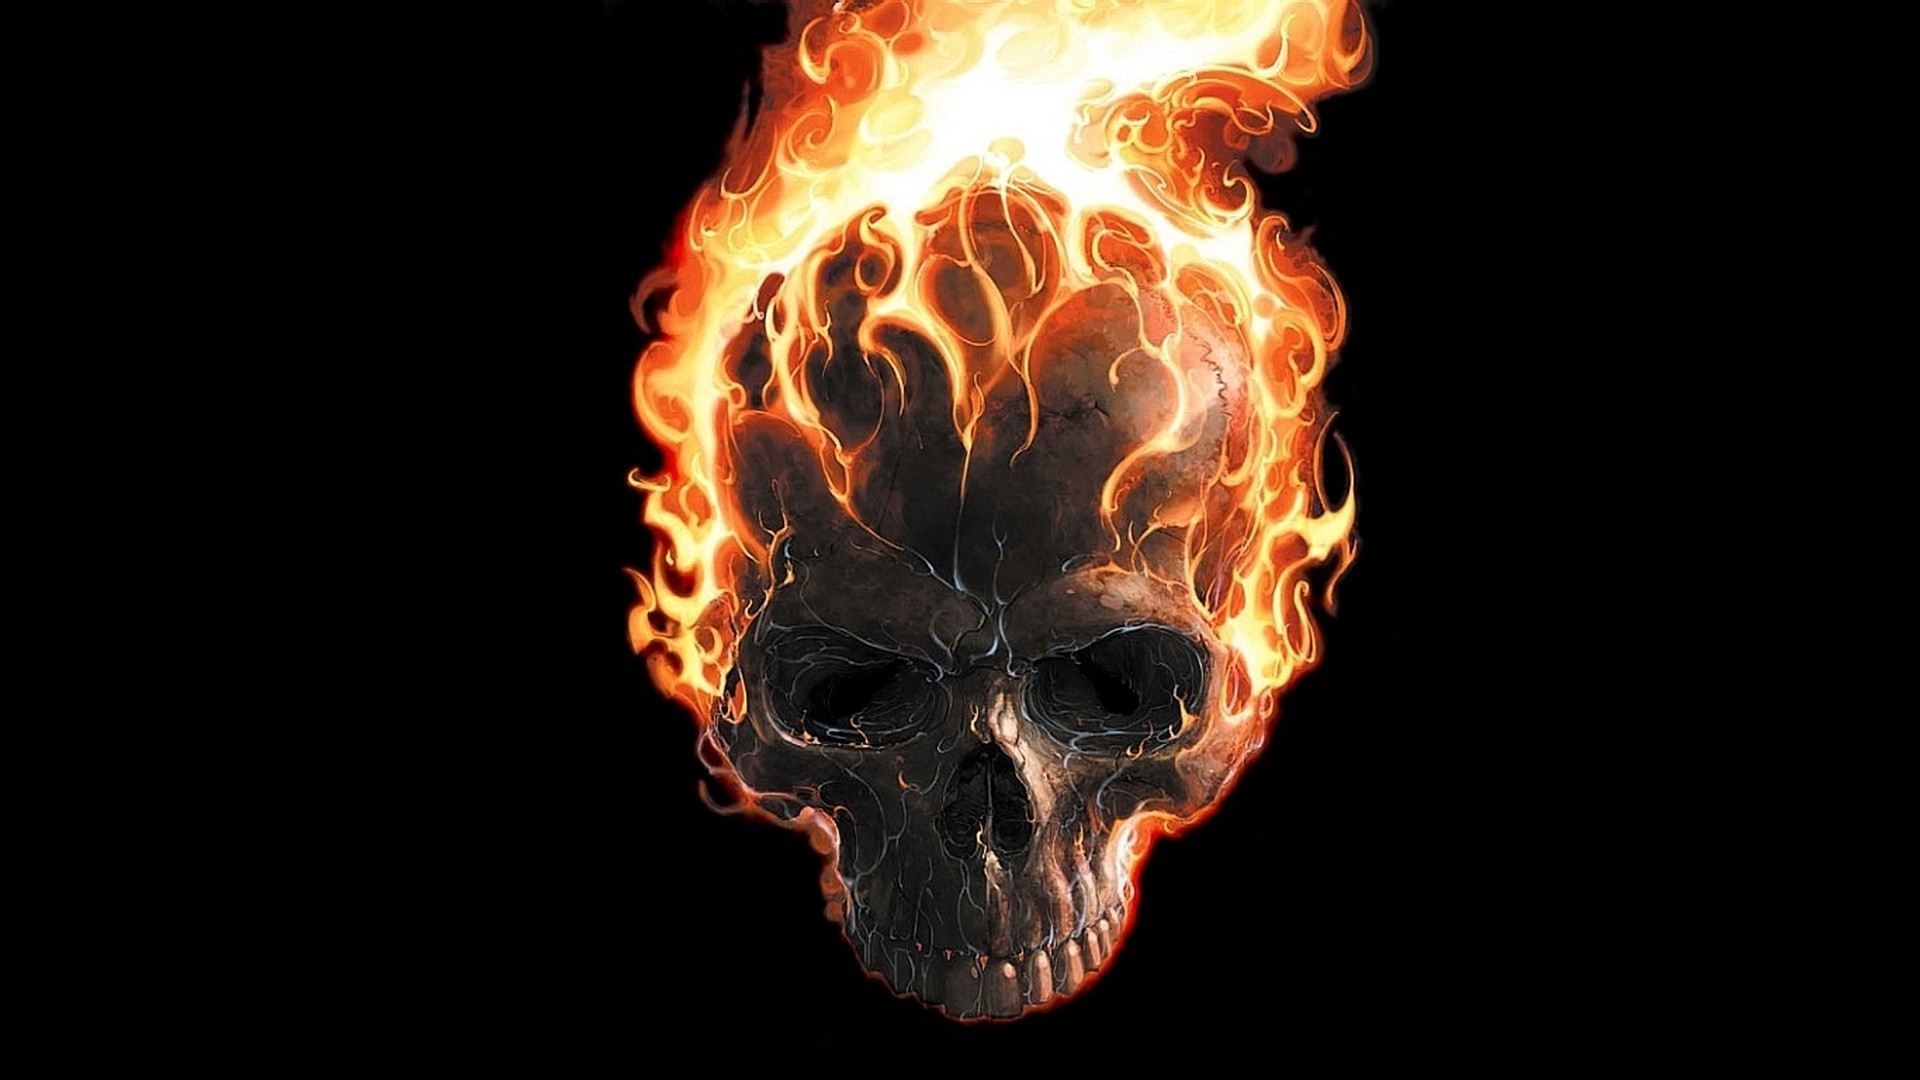 fire skull wallpaper,flame,fire,heat,skull,bone